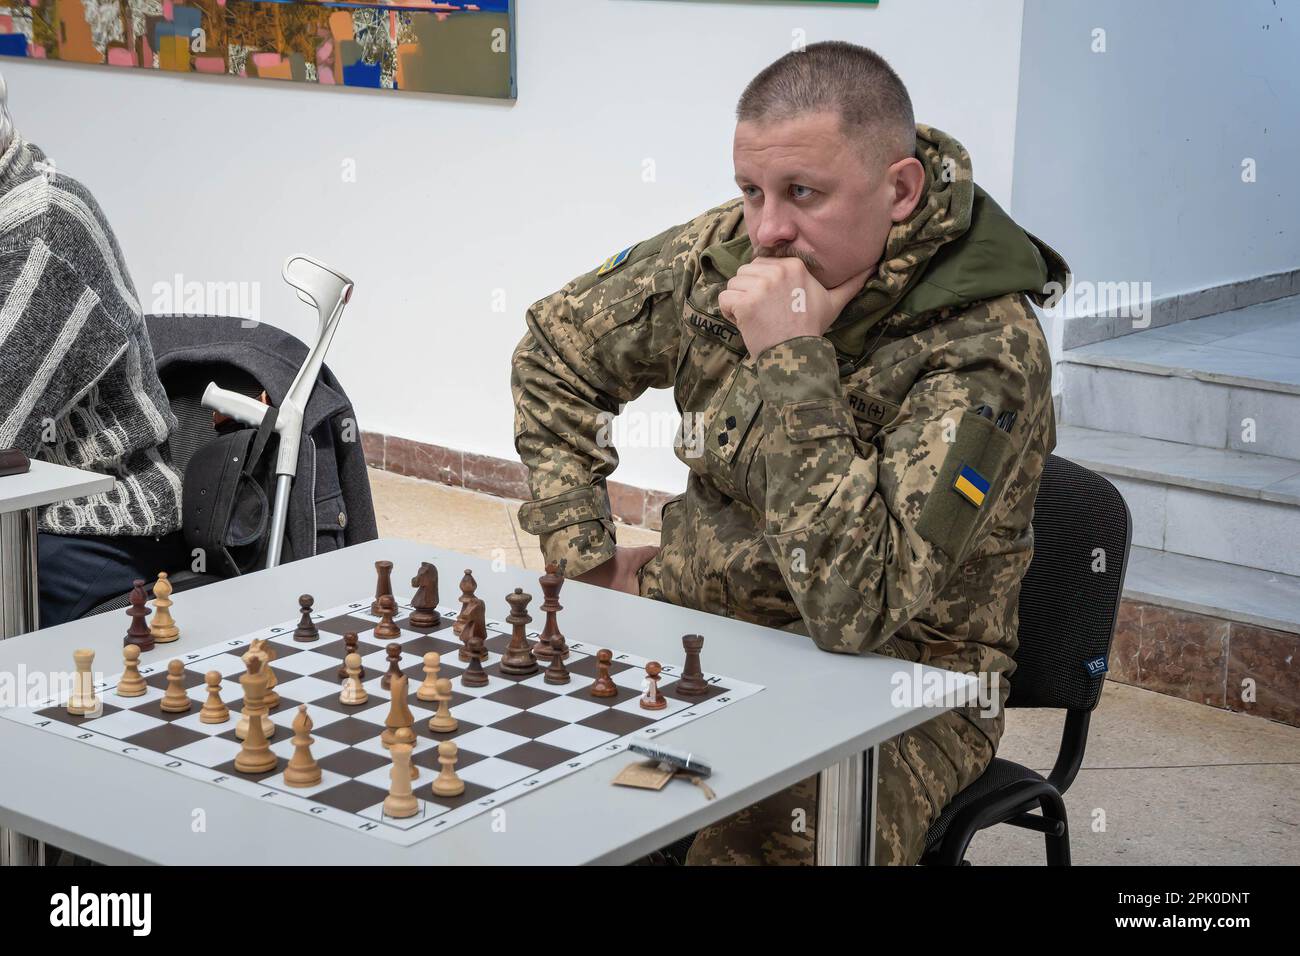 Un uomo militare gioca a scacchi in una sessione di scacchi simultanea.  Civili, militari e bambini hanno visitato un gioco simultaneo di scacchi  'Spring Counteroffensive' con la partecipazione dei grandi maestri  internazionali